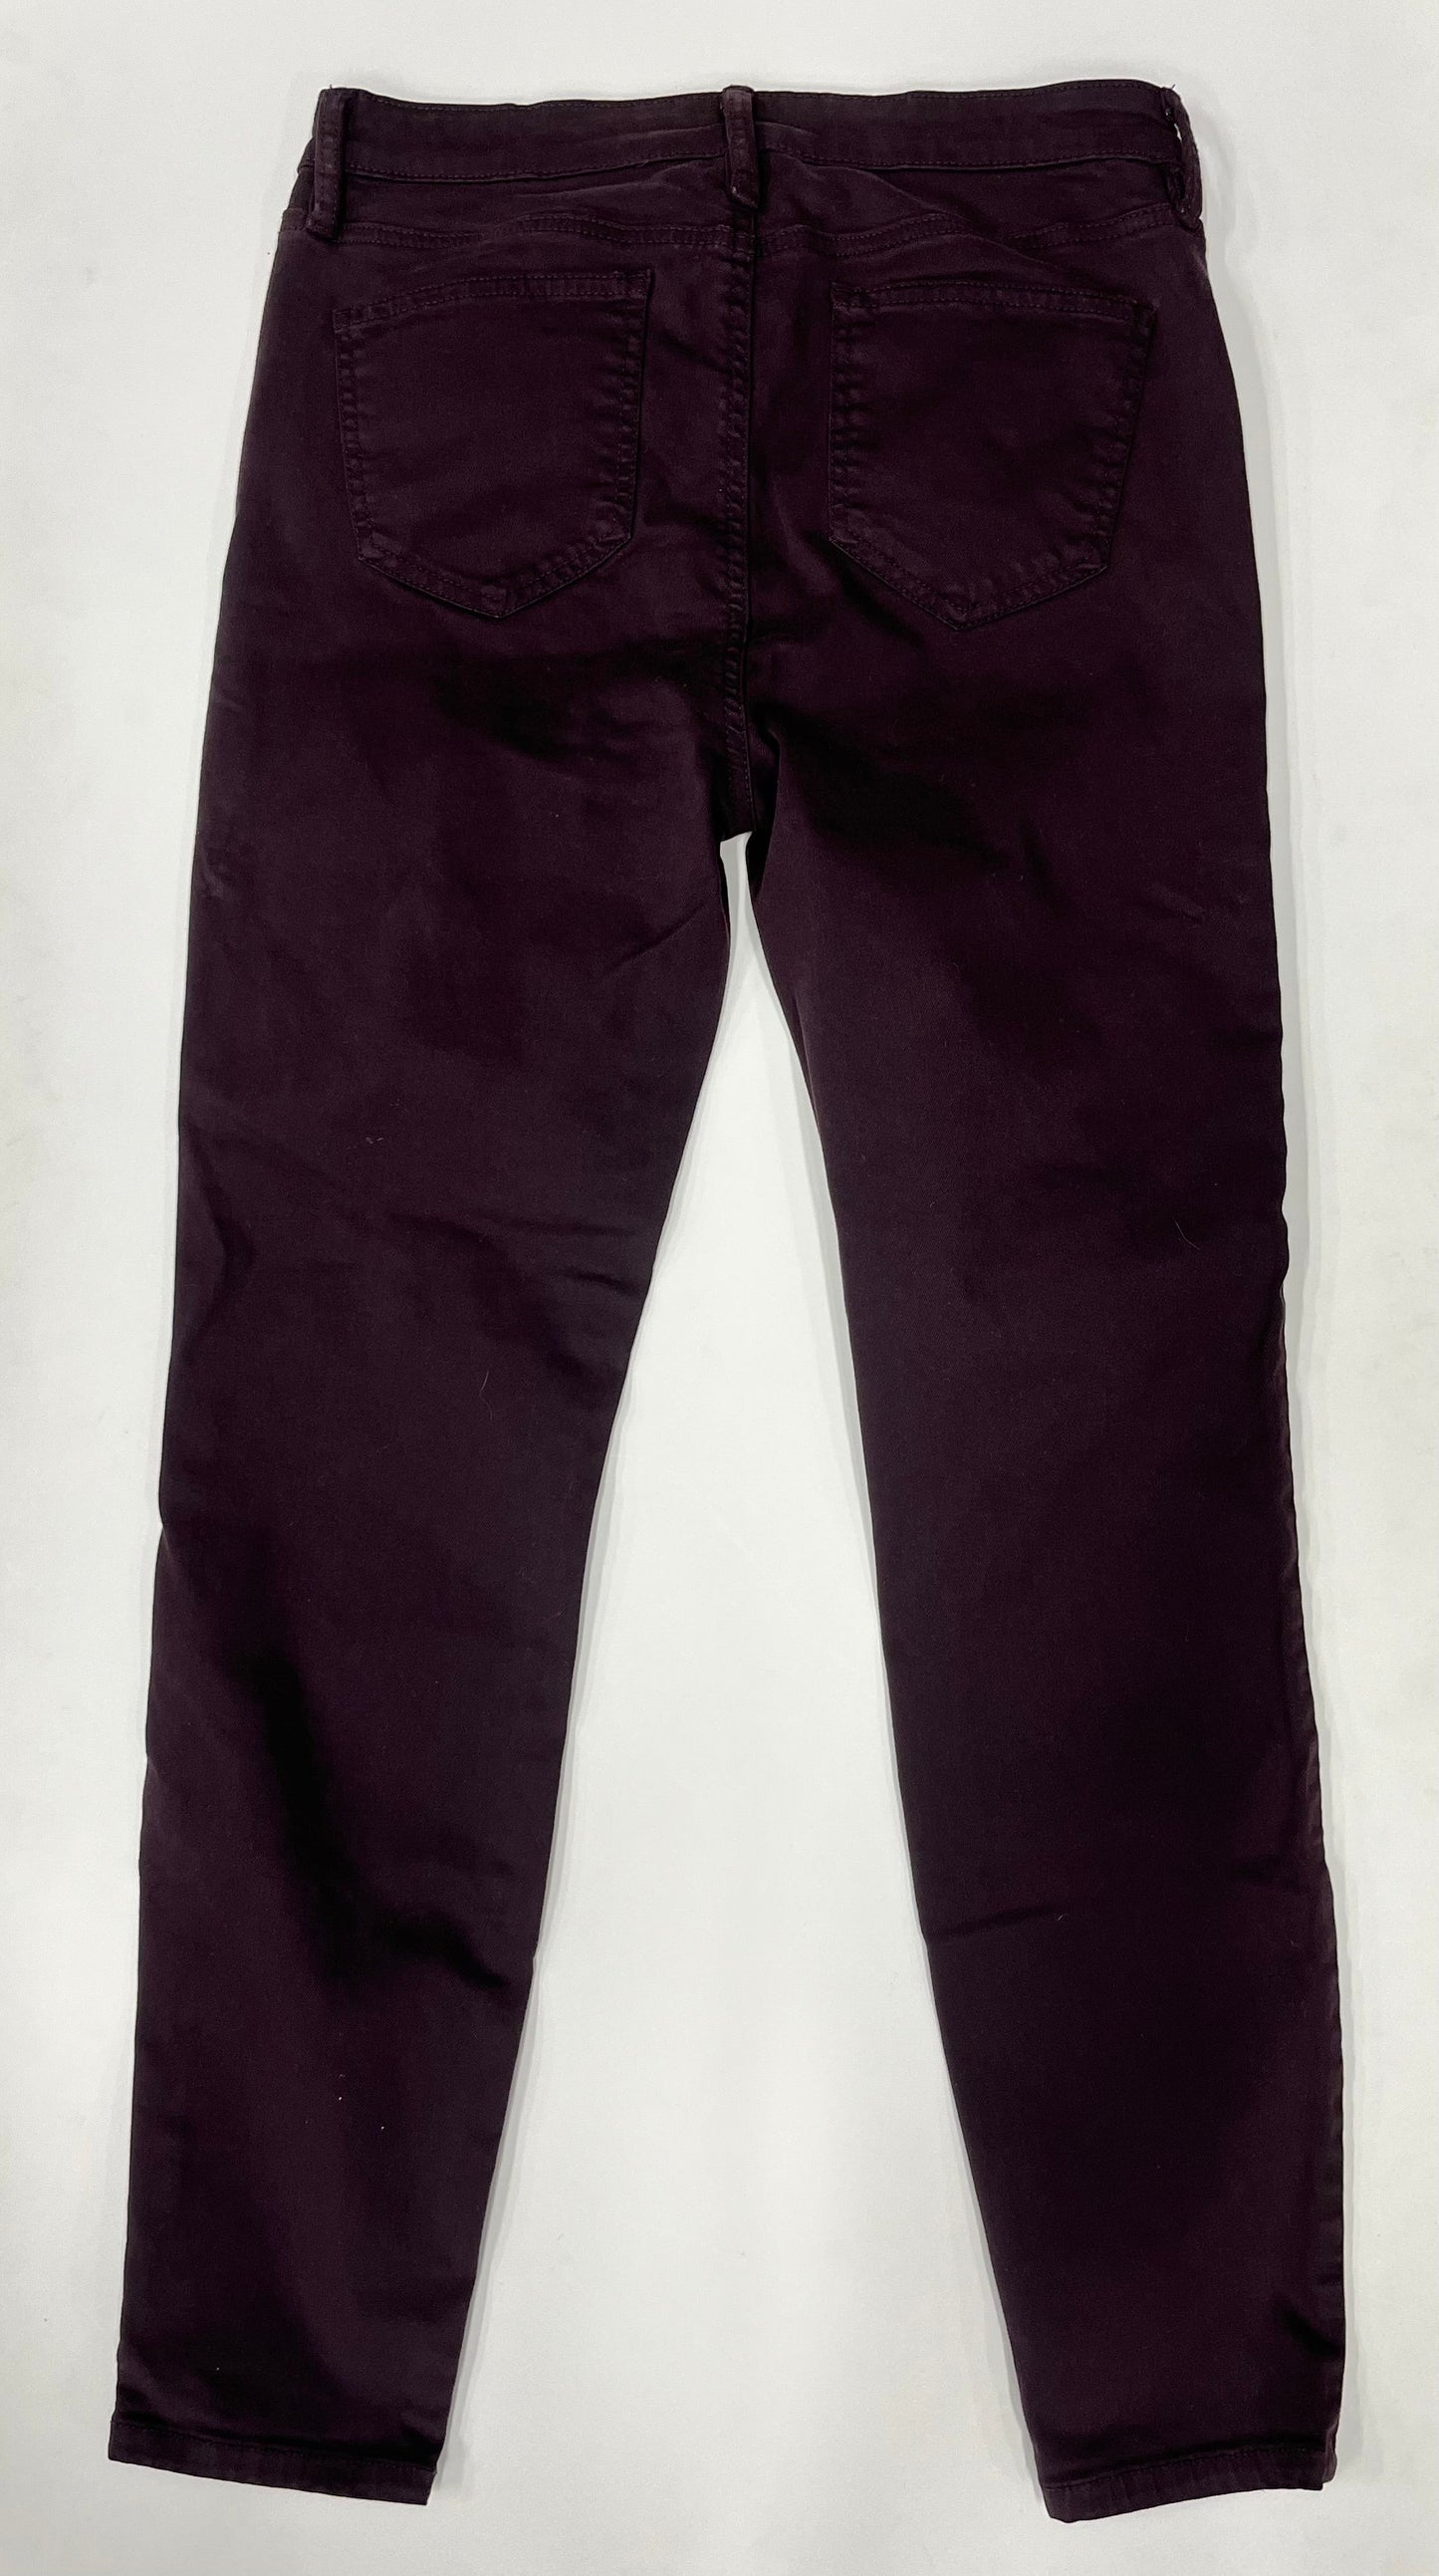 Pants Work/dress By Buffalo David Bitton  Size: 6